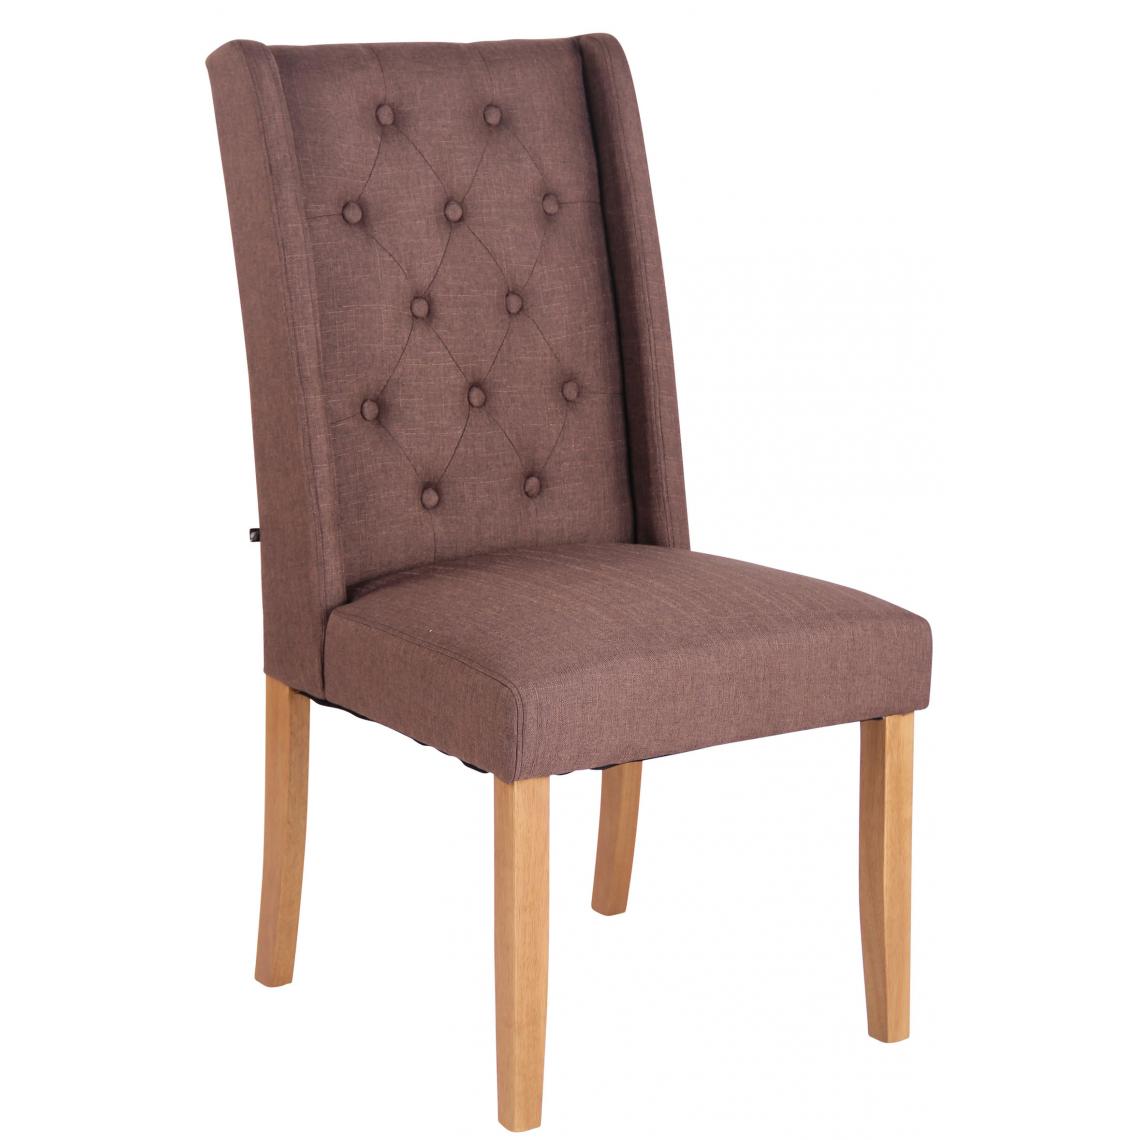 Icaverne - Admirable Chaise de salle à manger categorie Kingston tissu antique-clair couleur marron - Chaises